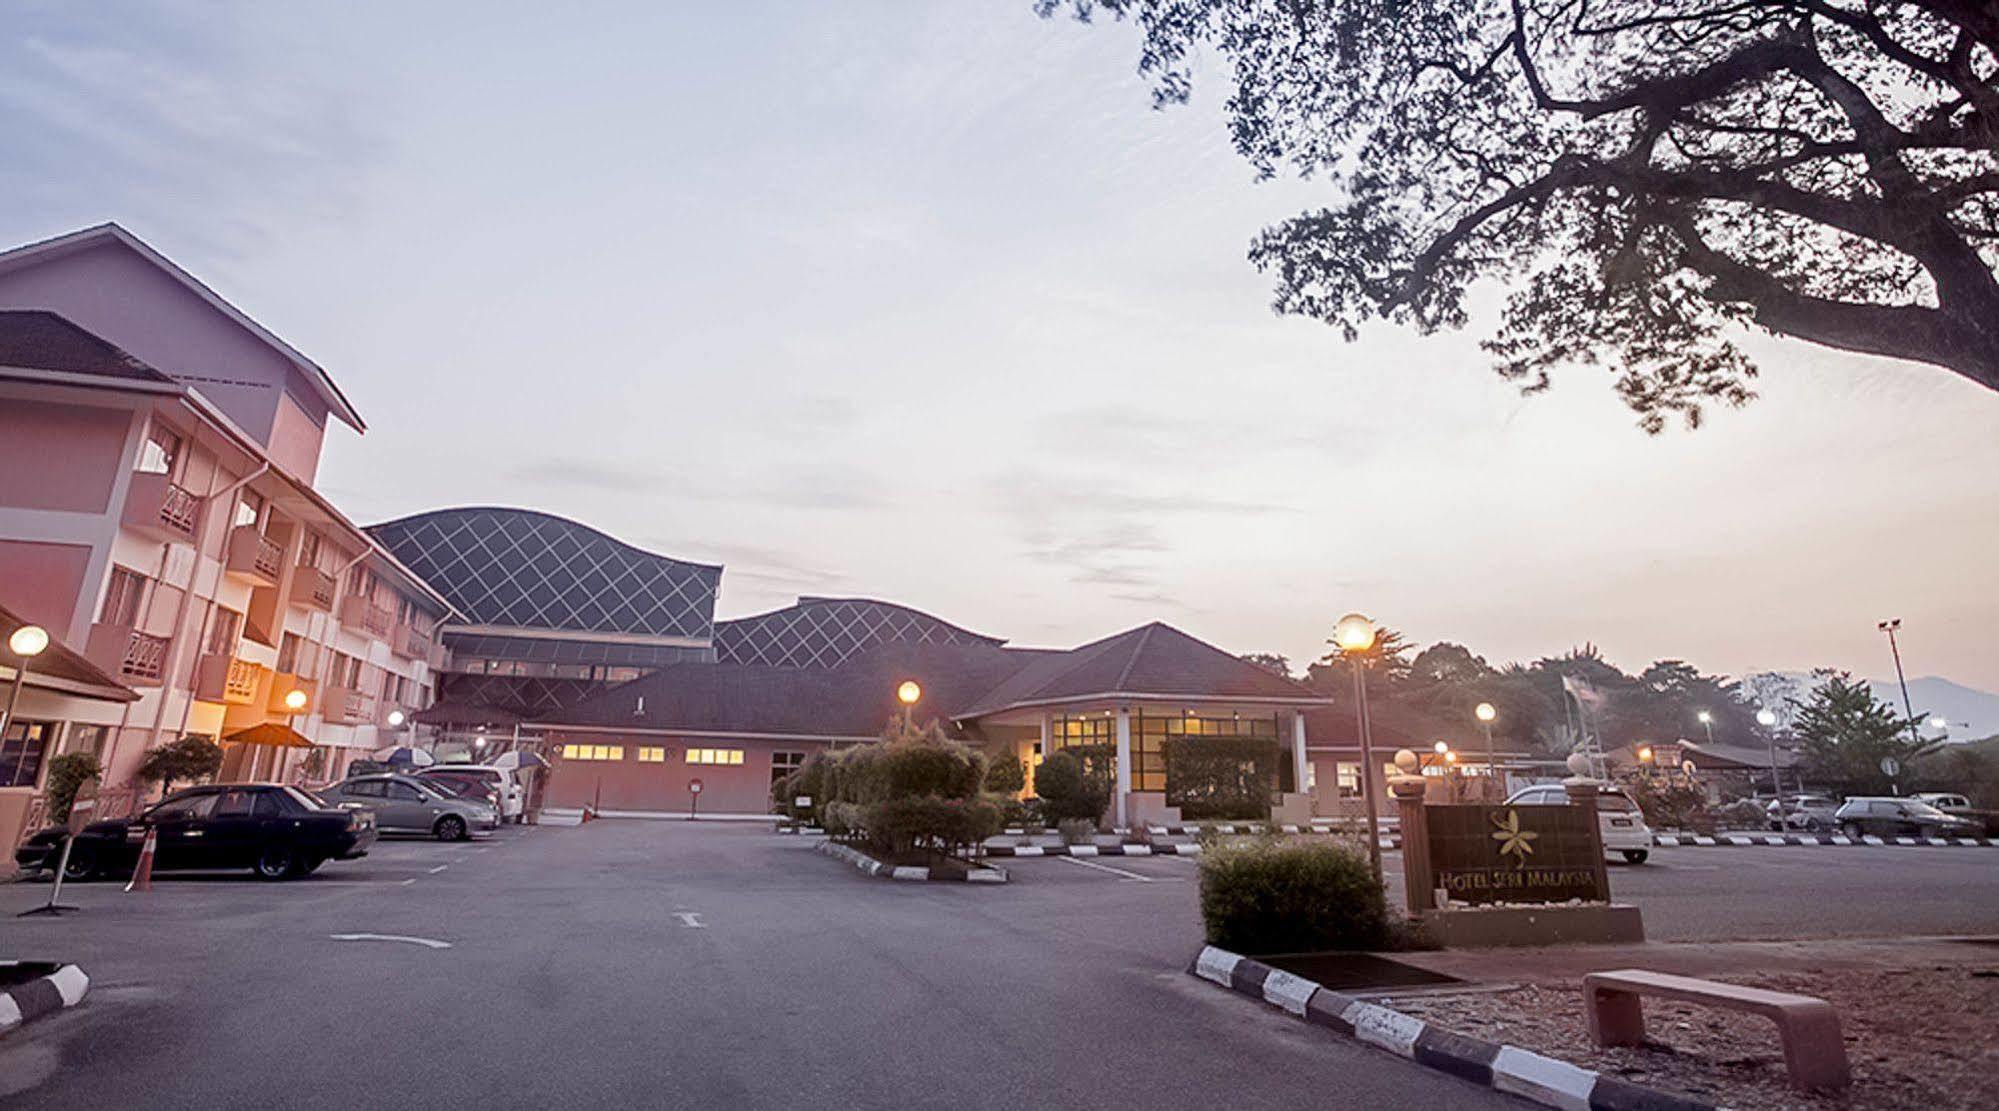 Hotel Seri Malaysia Ipoh Bagian luar foto